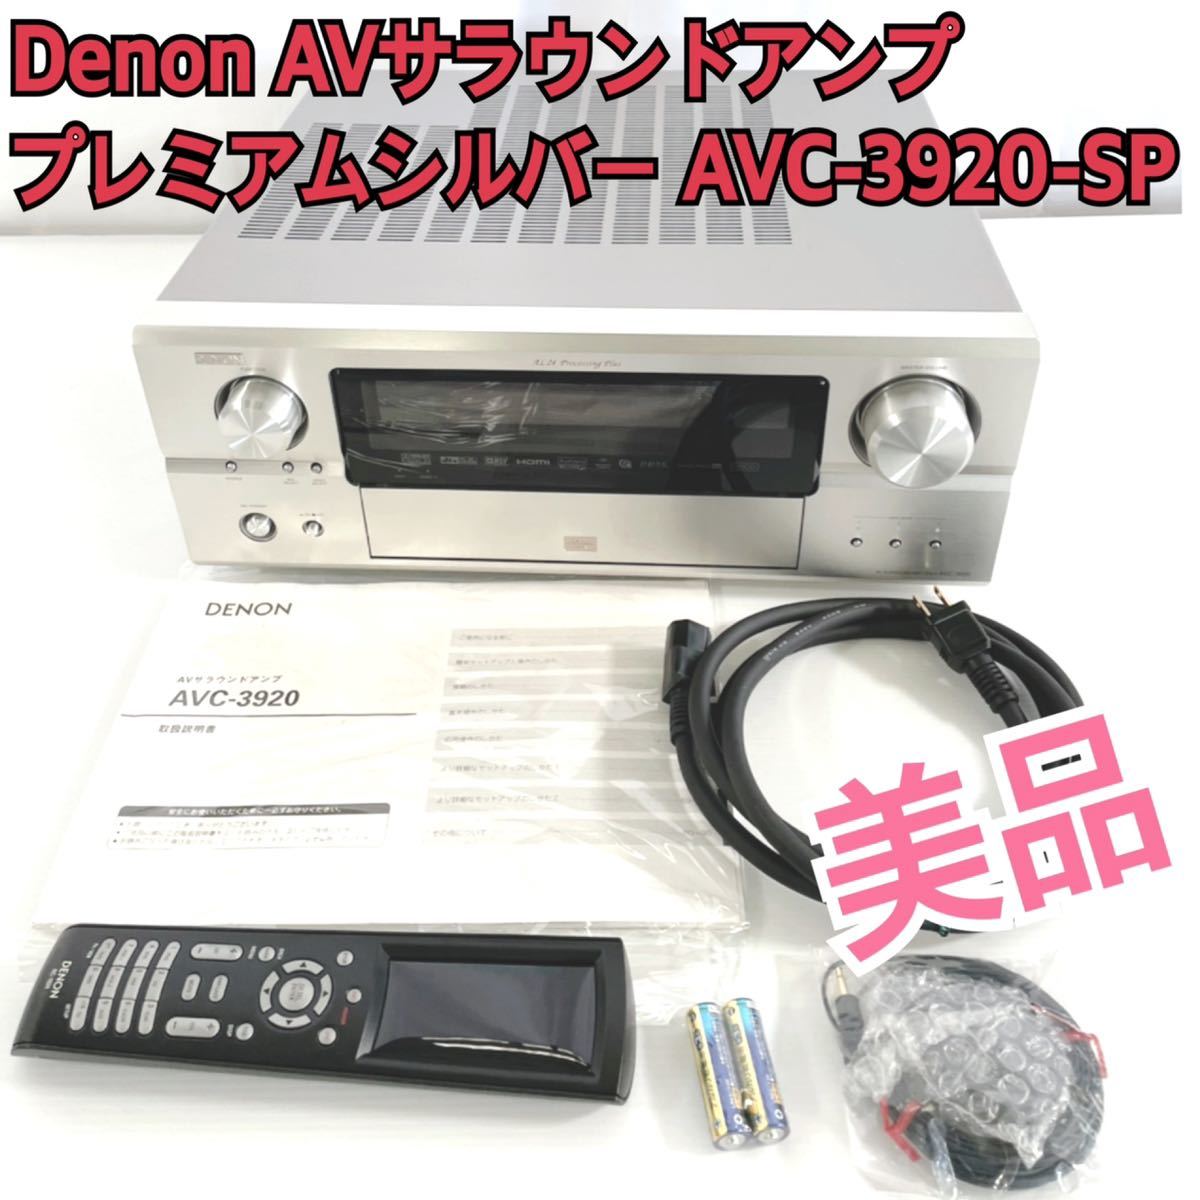 オーディオ機器 アンプ 美品Denon AVサラウンドアンプ プレミアムシルバー AVC-3920-SP 